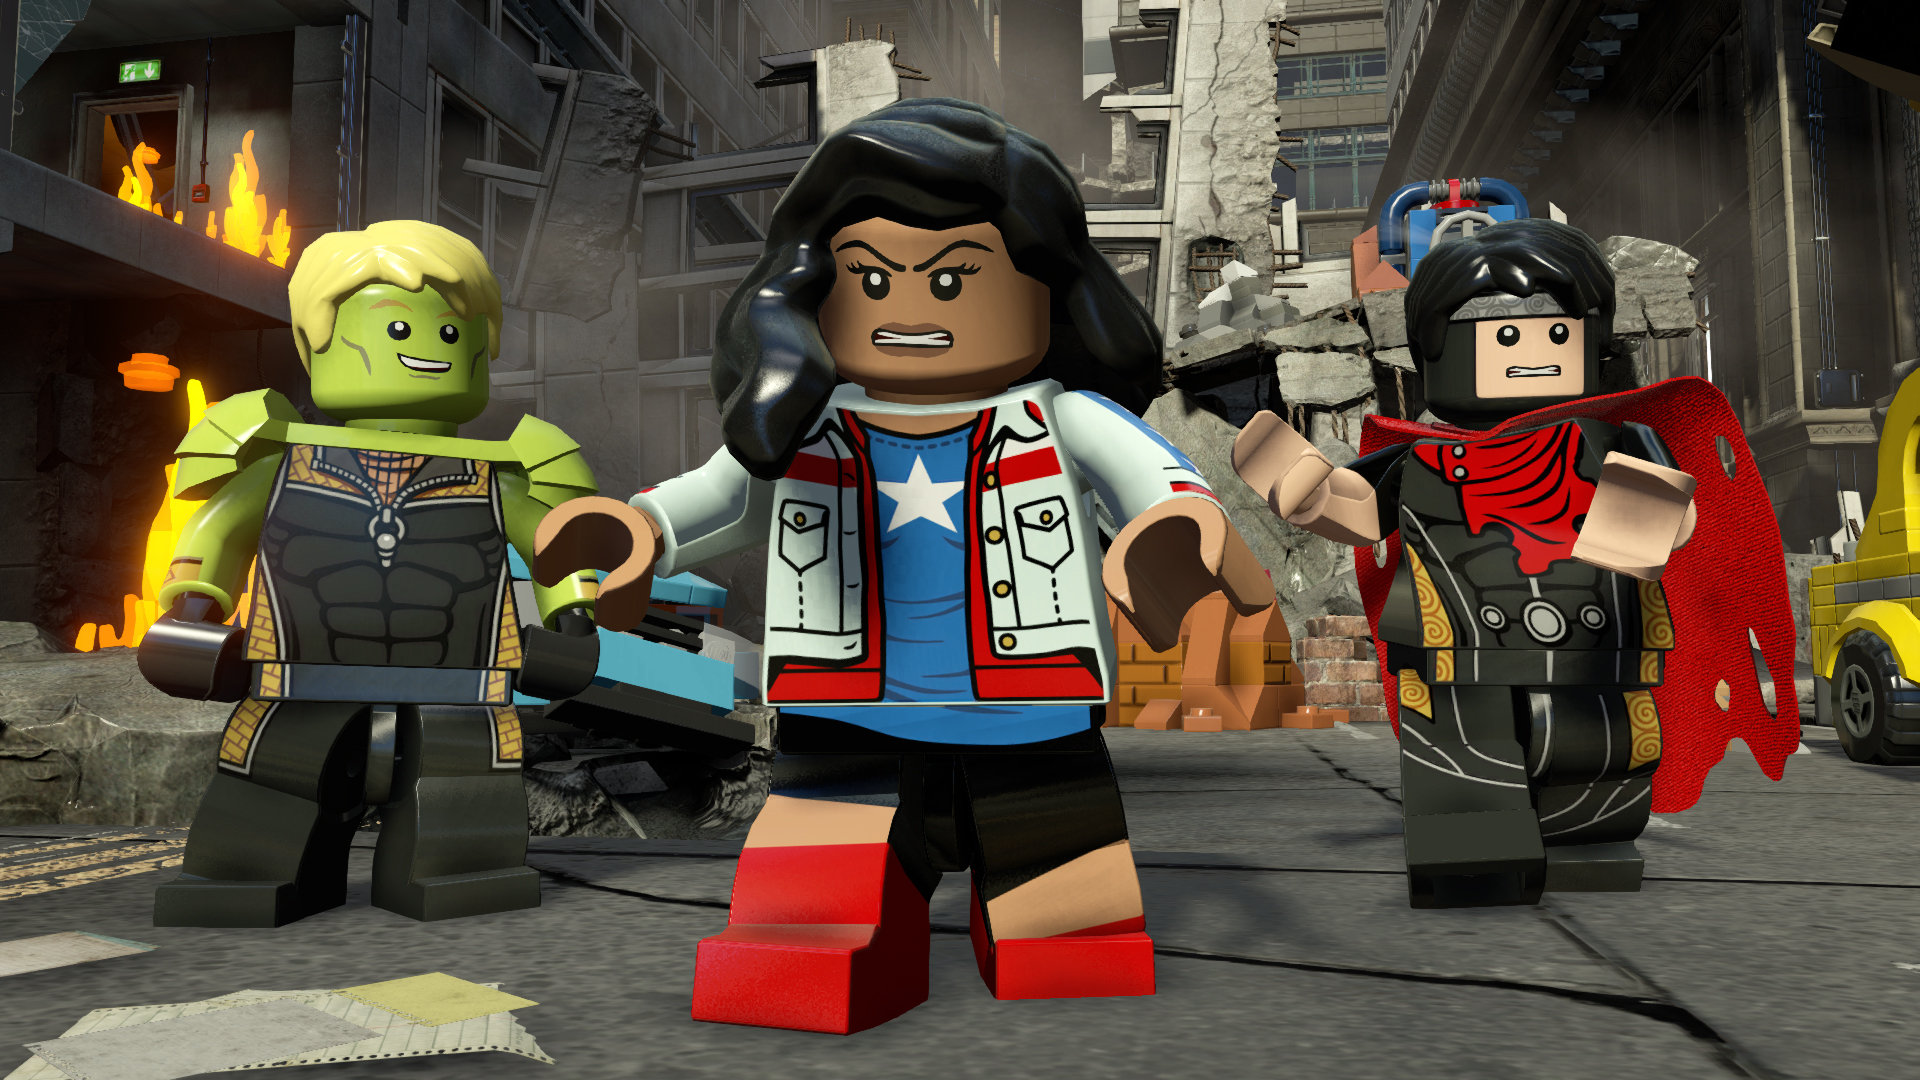 Скачать обои Мстители Lego Marvel на телефон бесплатно